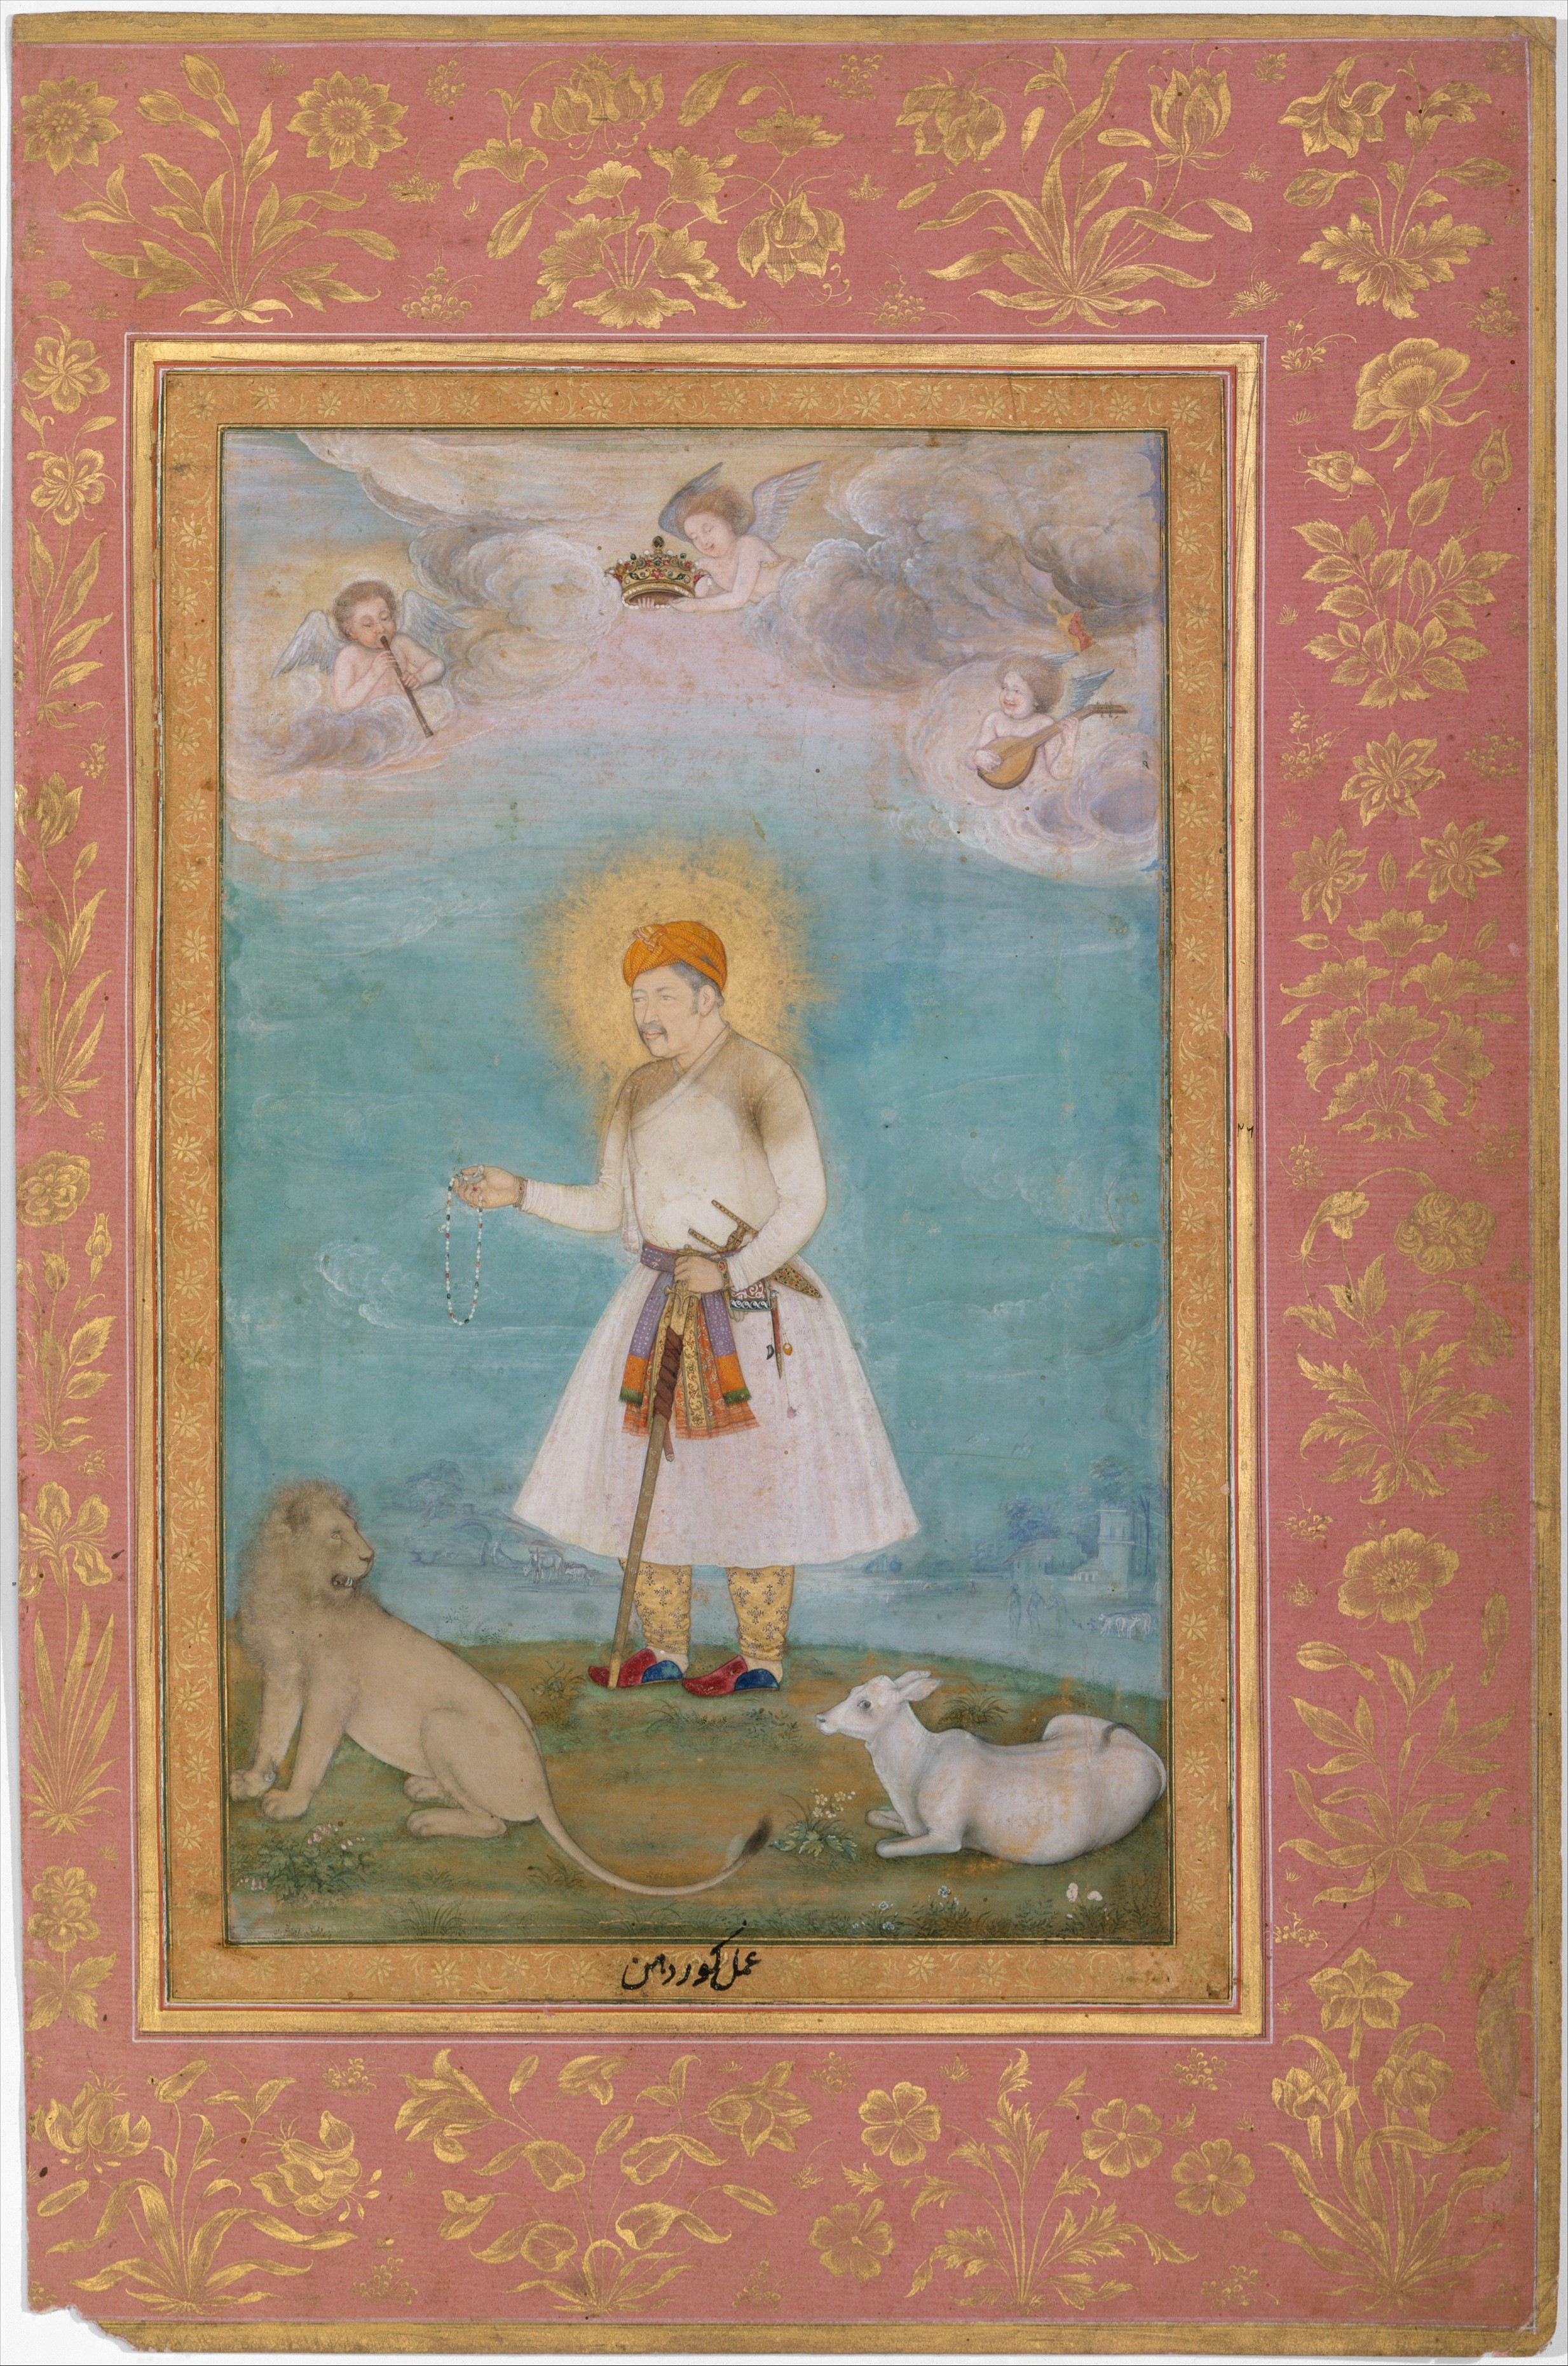 Akbar con león y ternero by Govardhan  - 1630 Museo Metropolitano de Arte